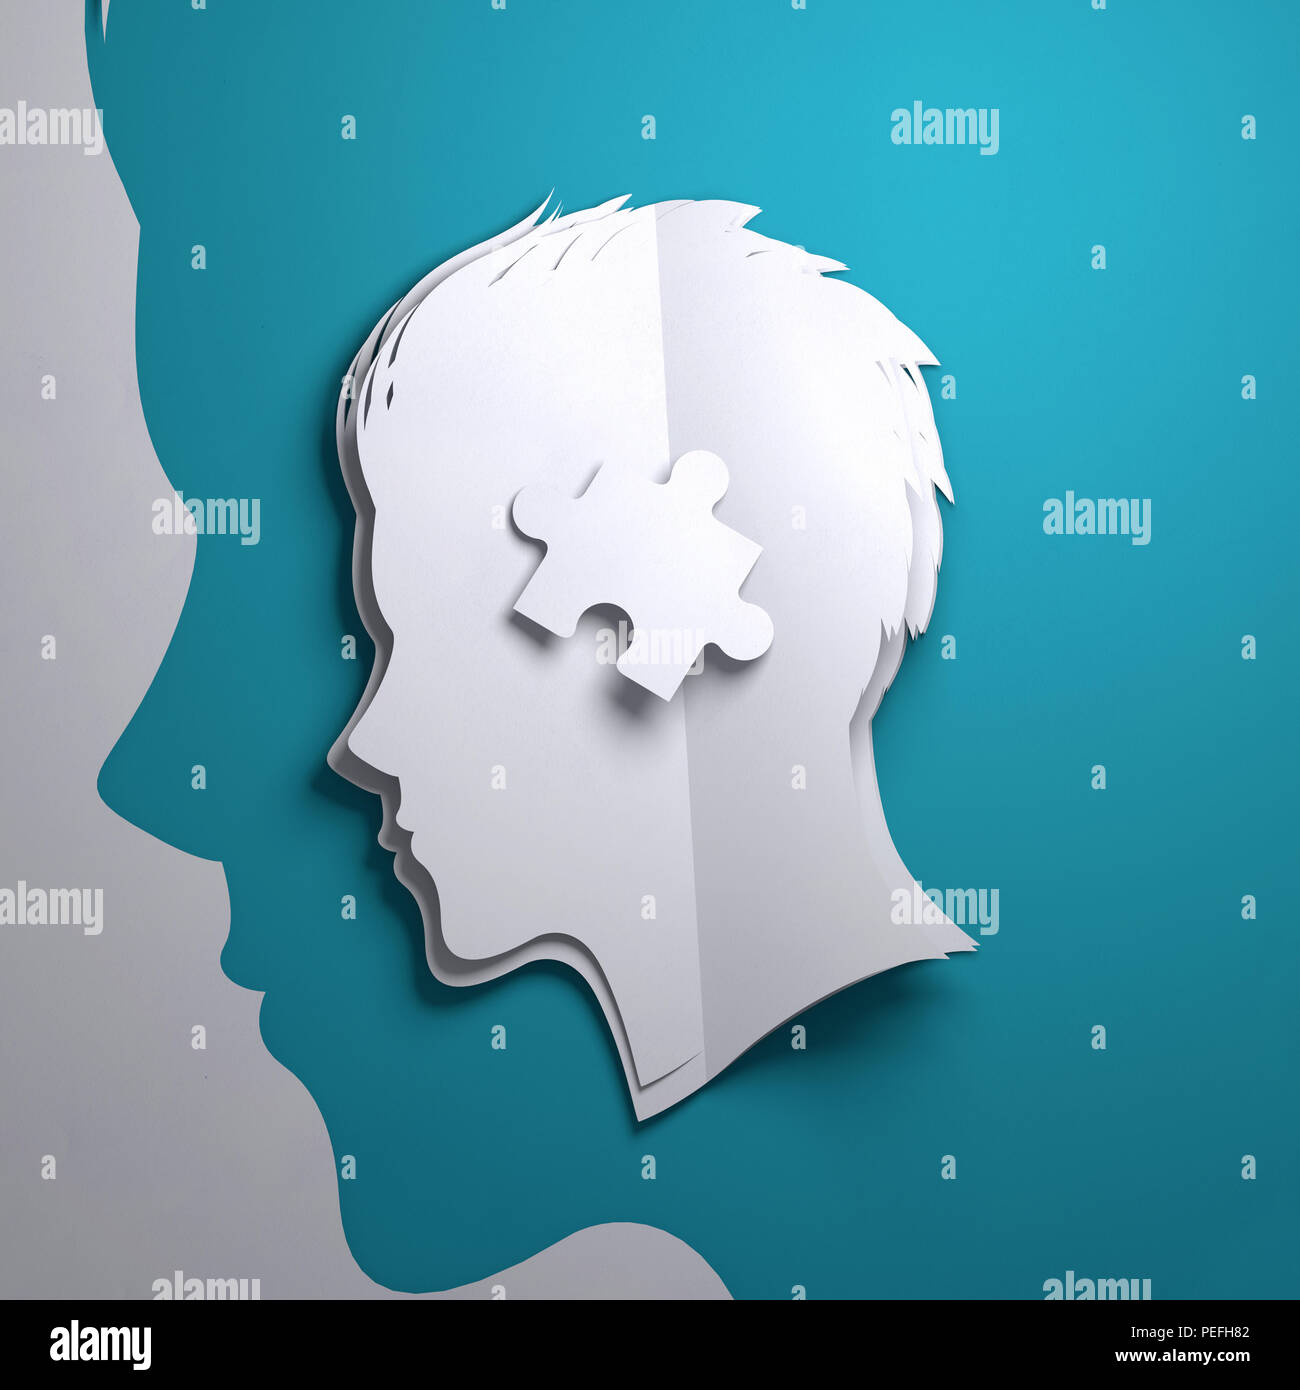 Papier plié origami. La silhouette de la tête d'une personne avec une pièce du puzzle. Mindfulness conceptuel 3D illustration. Banque D'Images